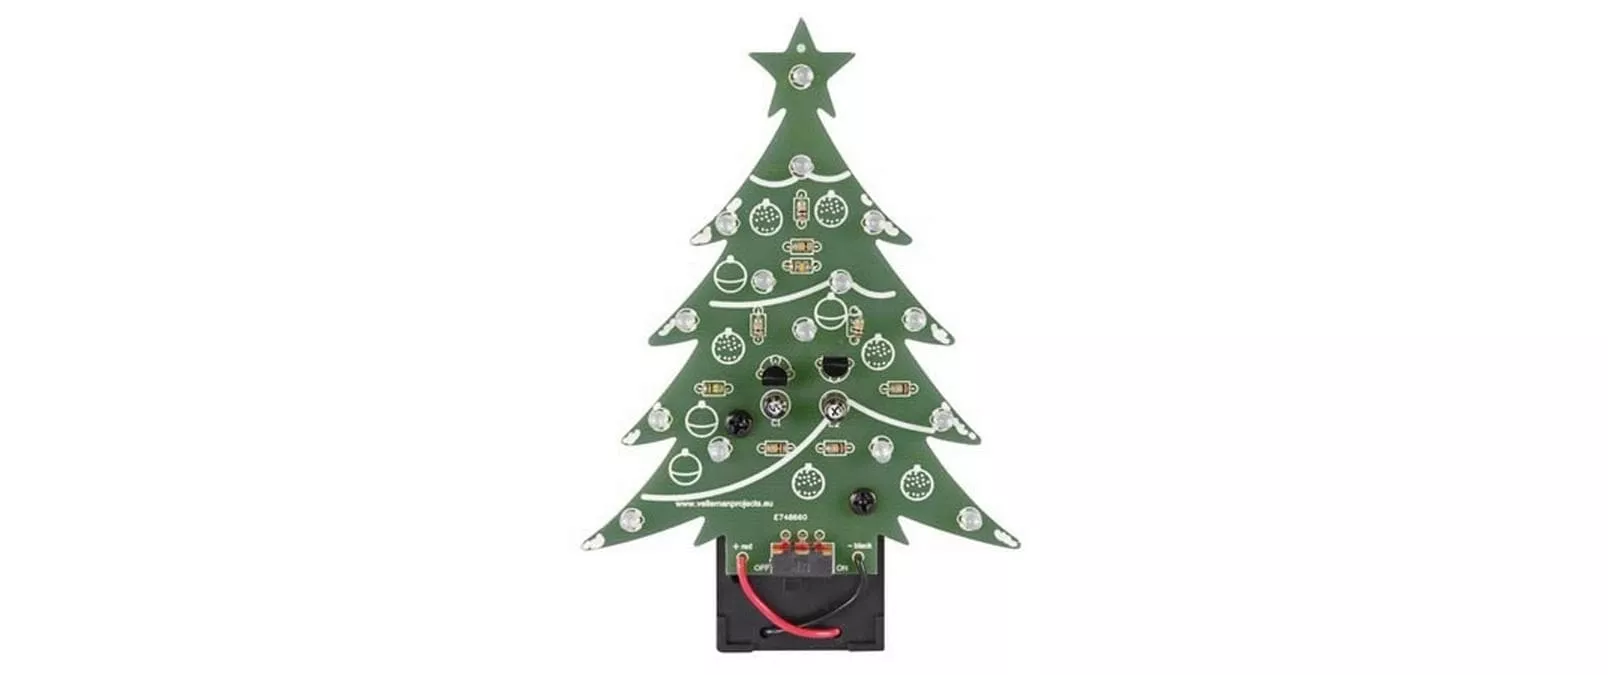 Kits de montage Arbre de Noël LED bleue, avec interrupteur marche/arrêt